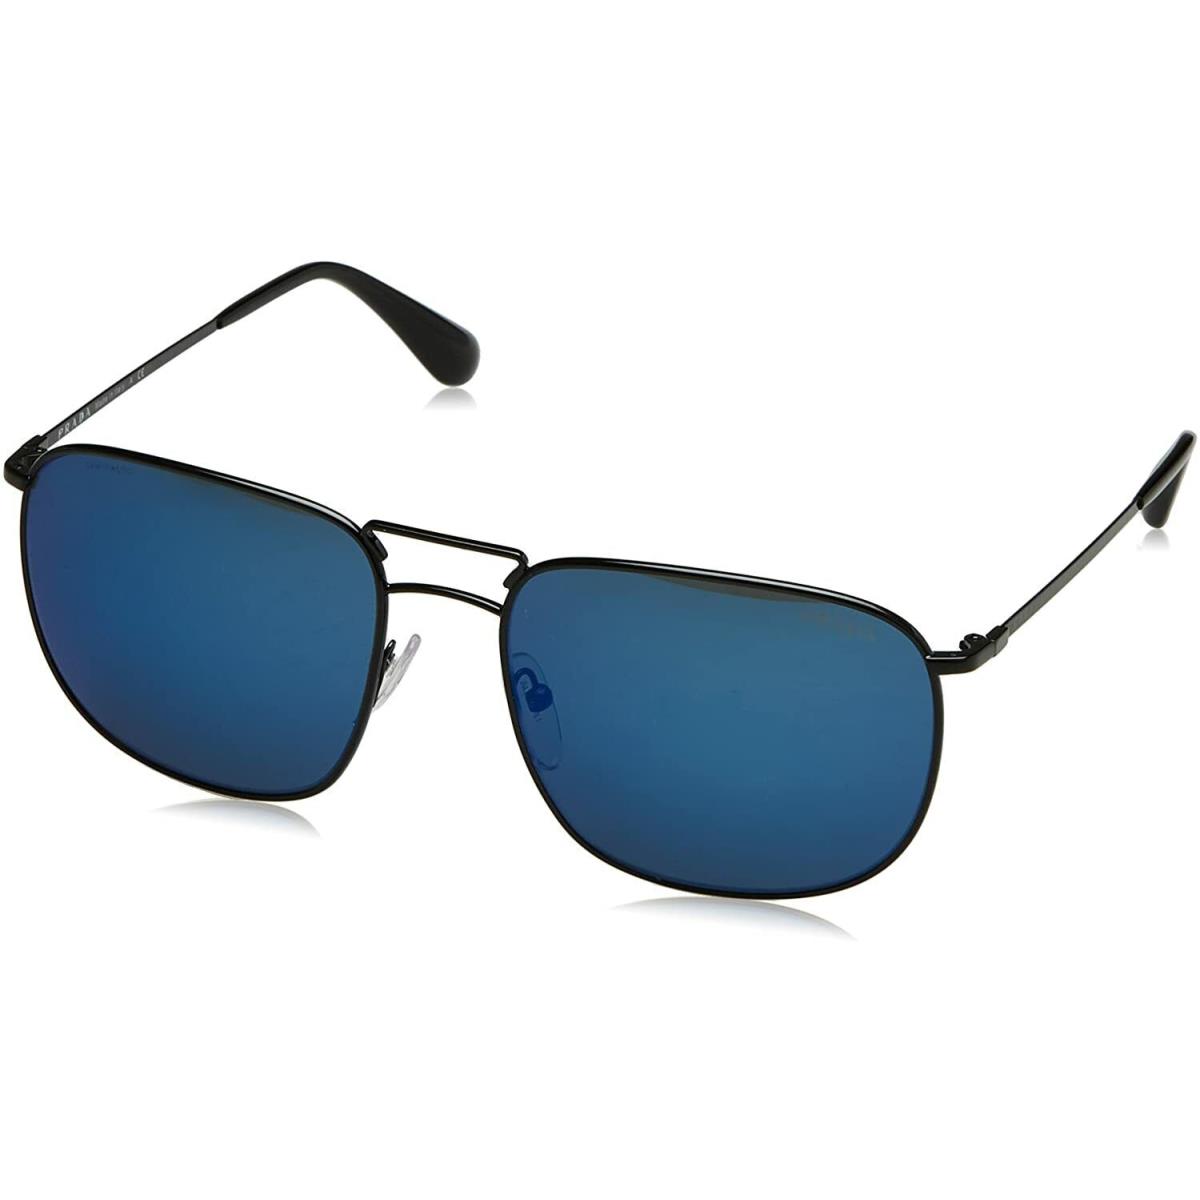 Prada Sunglasses 0PR 51TS 7AX9P1 57 140 Pilot Eyeglasses - Black Frame, Blue Lens